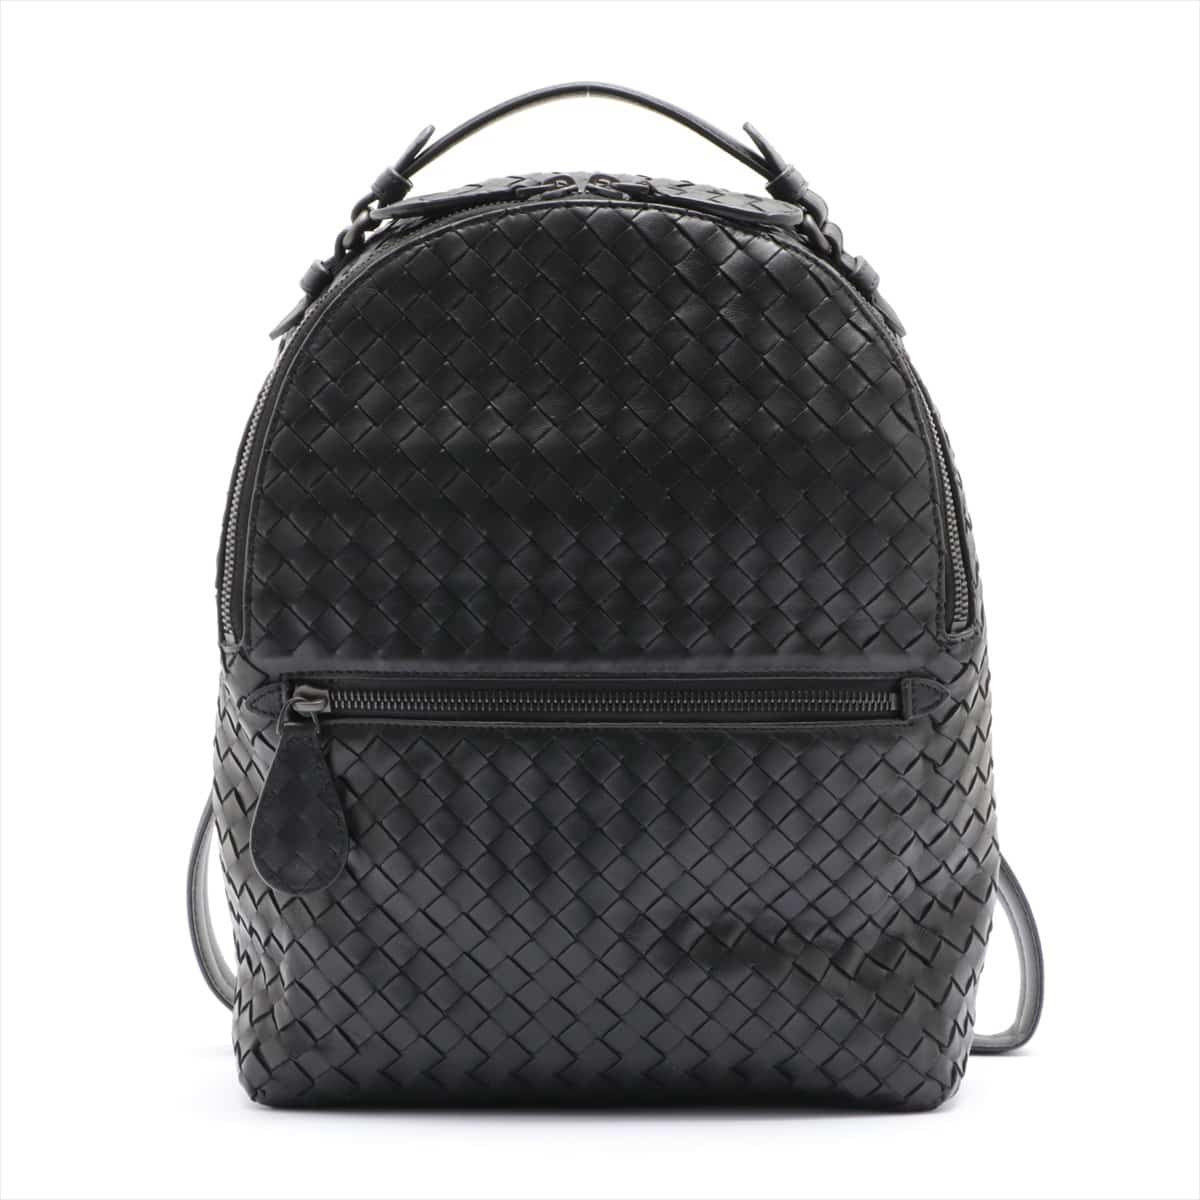 Bottega Veneta Intrecciato Leather Backpack Black